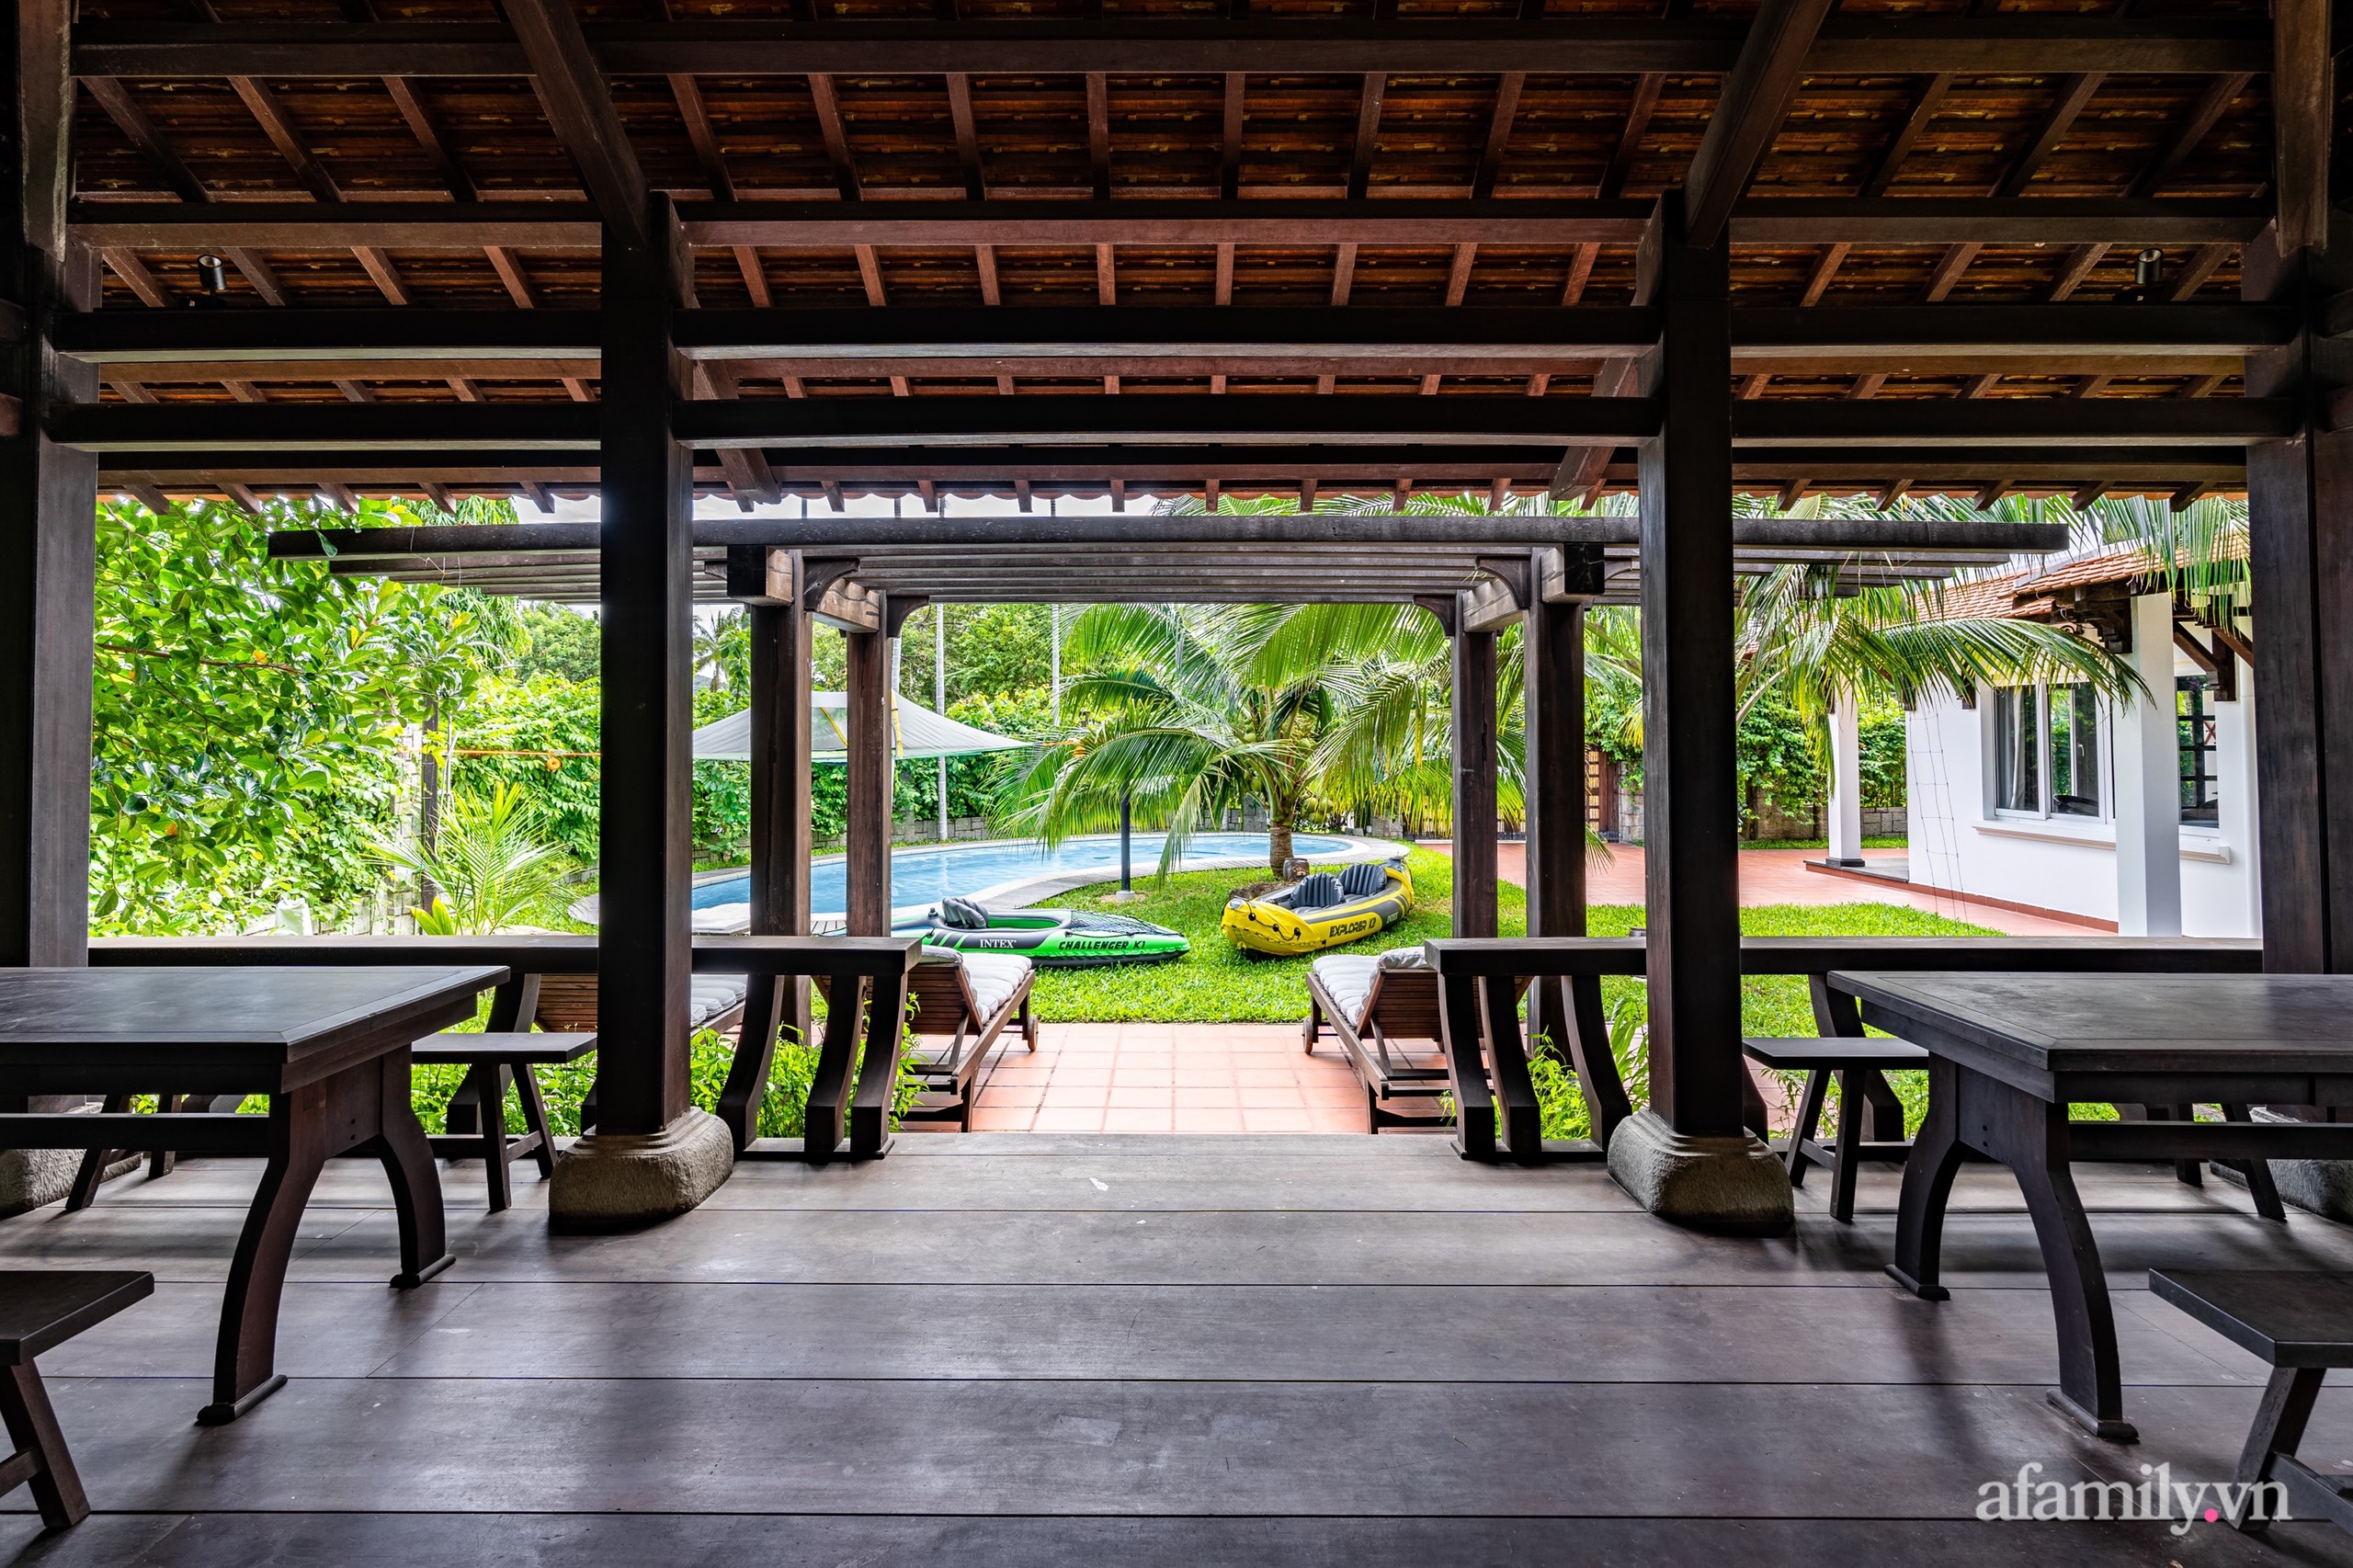 Căn nhà vườn xây 10 năm vẫn đẹp hút mắt với nội thất gỗ và cây xanh quanh nhà ở Nha Trang - Ảnh 7.